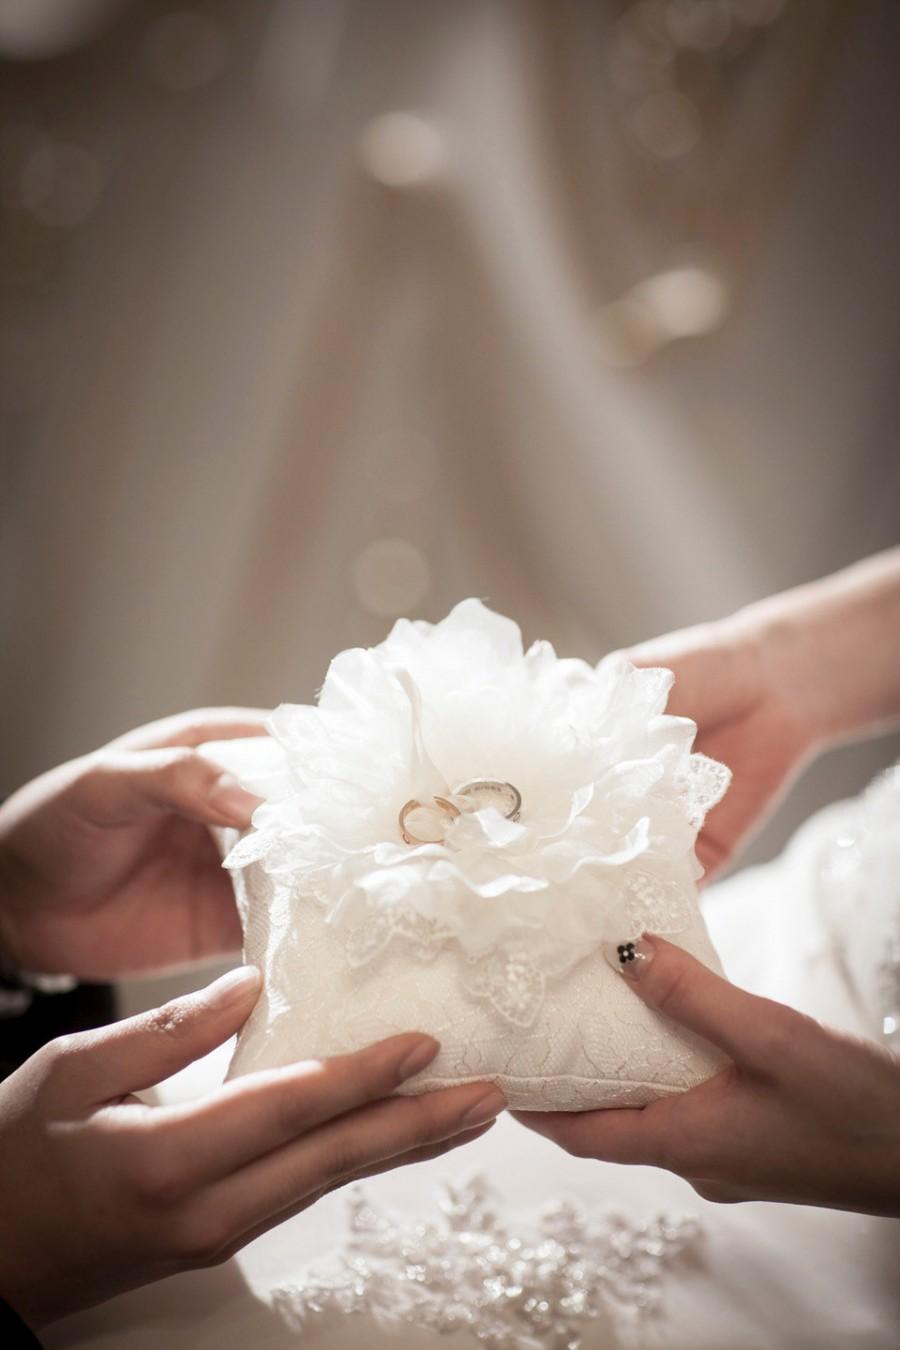 زفاف - Wedding Ring Pillow, wedding ring bearer pillow, off white flower ring pillow, Ivory lace ring pillow, wedding ring cushion